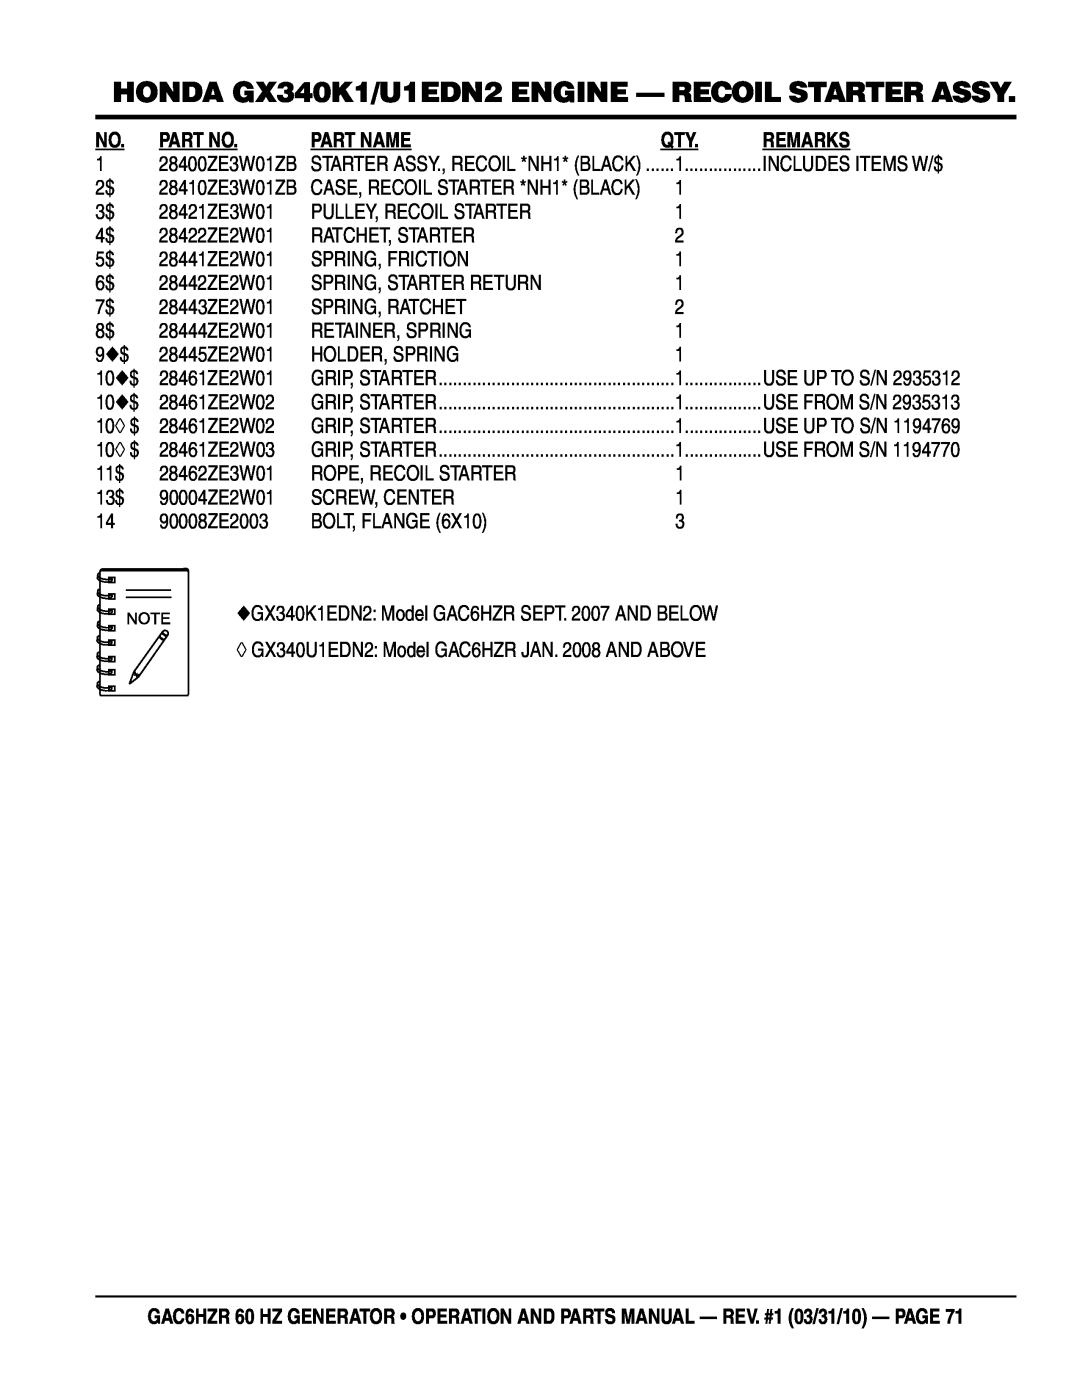 Multiquip GAC-6HZR HONDA GX340K1/U1EDN2 ENGINE - RECOIL STARTER ASSY, Part Name, Remarks, 28400ZE3W01ZB, 28410ZE3W01ZB 